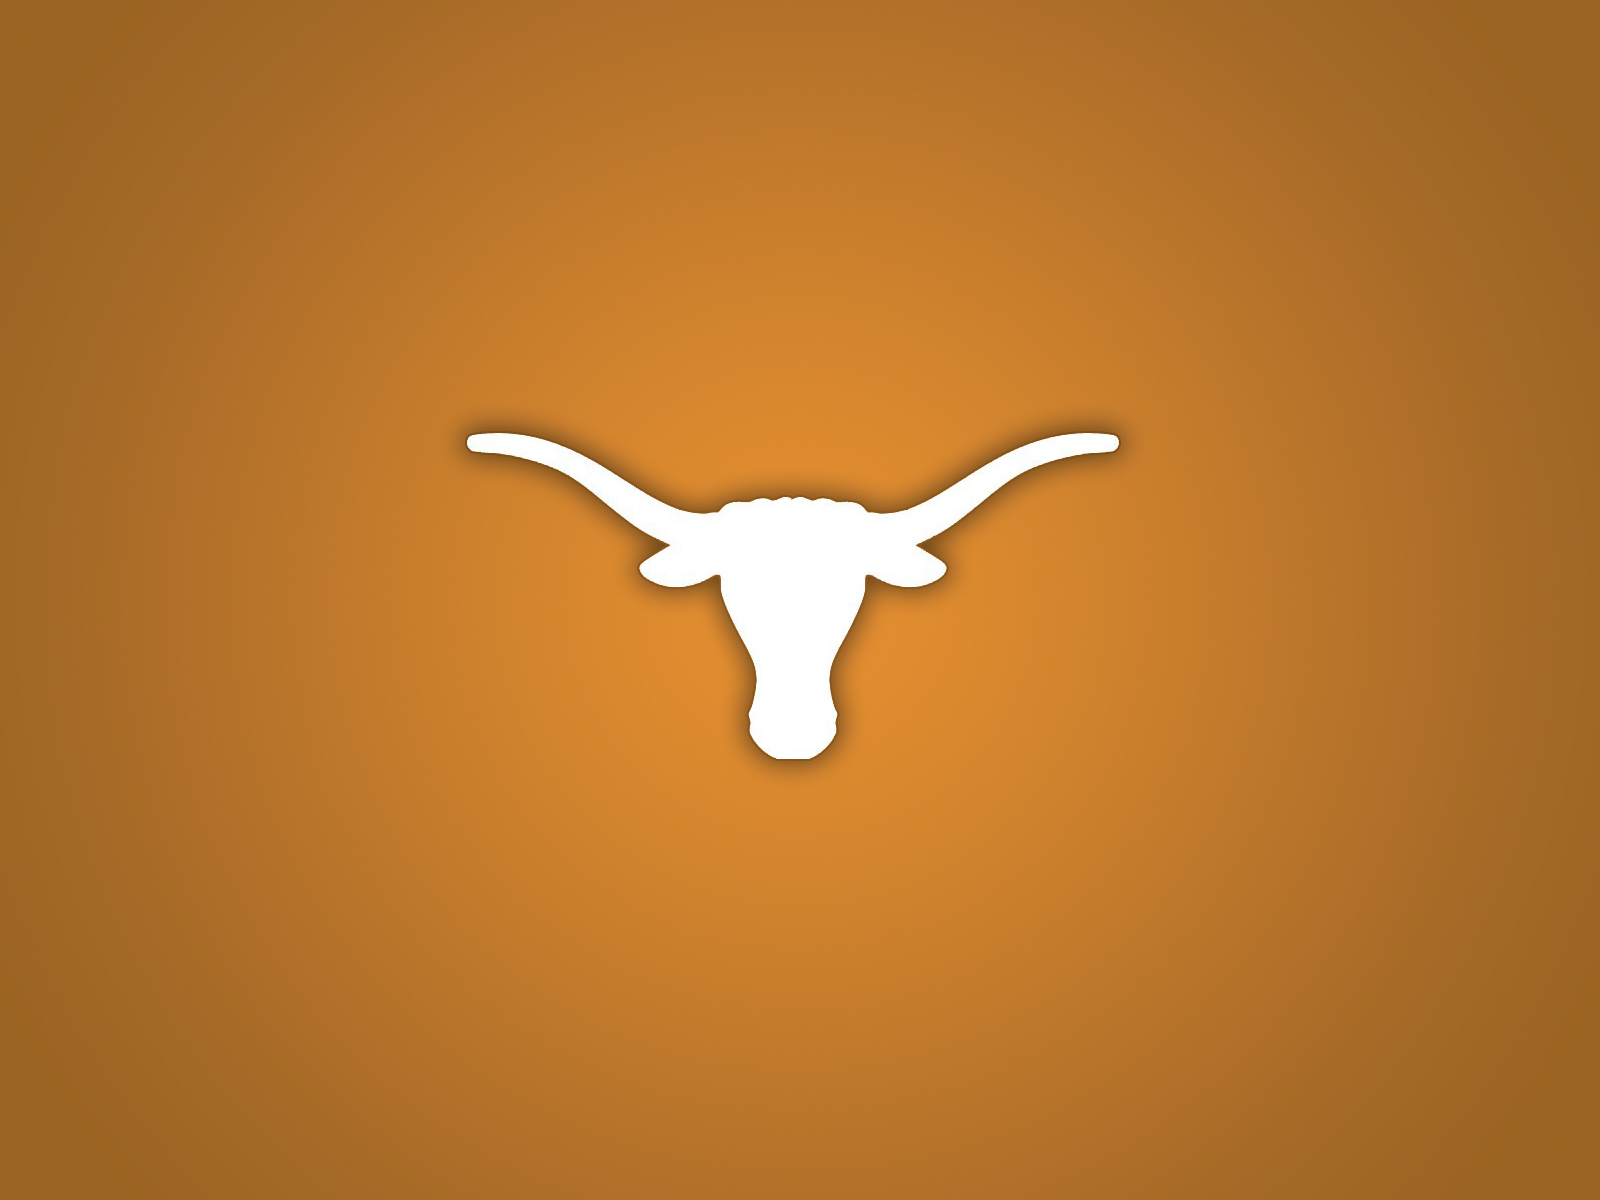 Texas Longhorns   Simple by Macchiavellian on